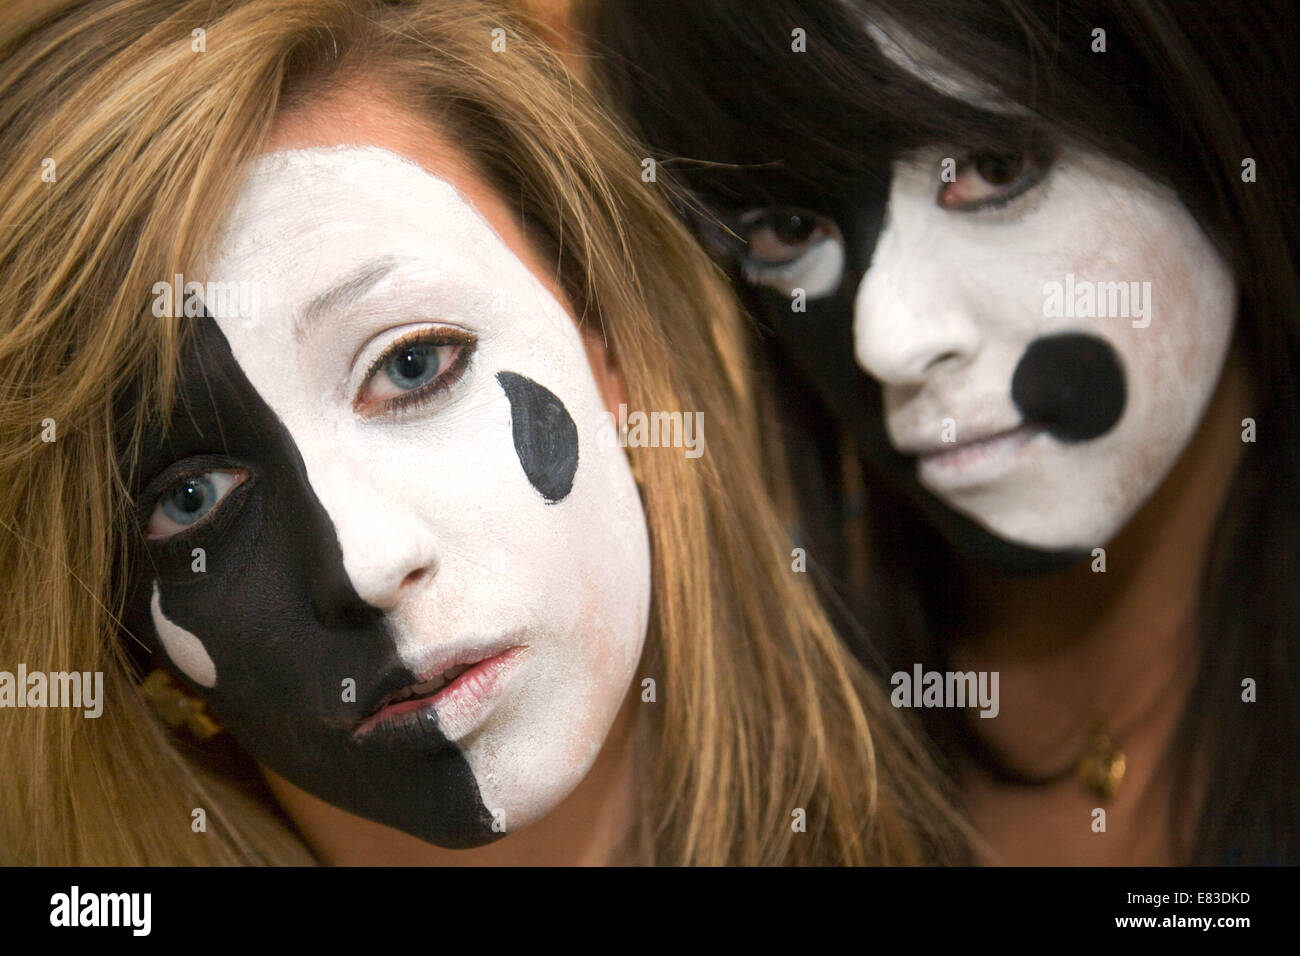 Zwei kaukasischen Teenager-Alter im Alter von 15 Jahren, hatte ihre Gesichter gemalt in dramatischen Farben schwarz und weiß, UK Stockfoto